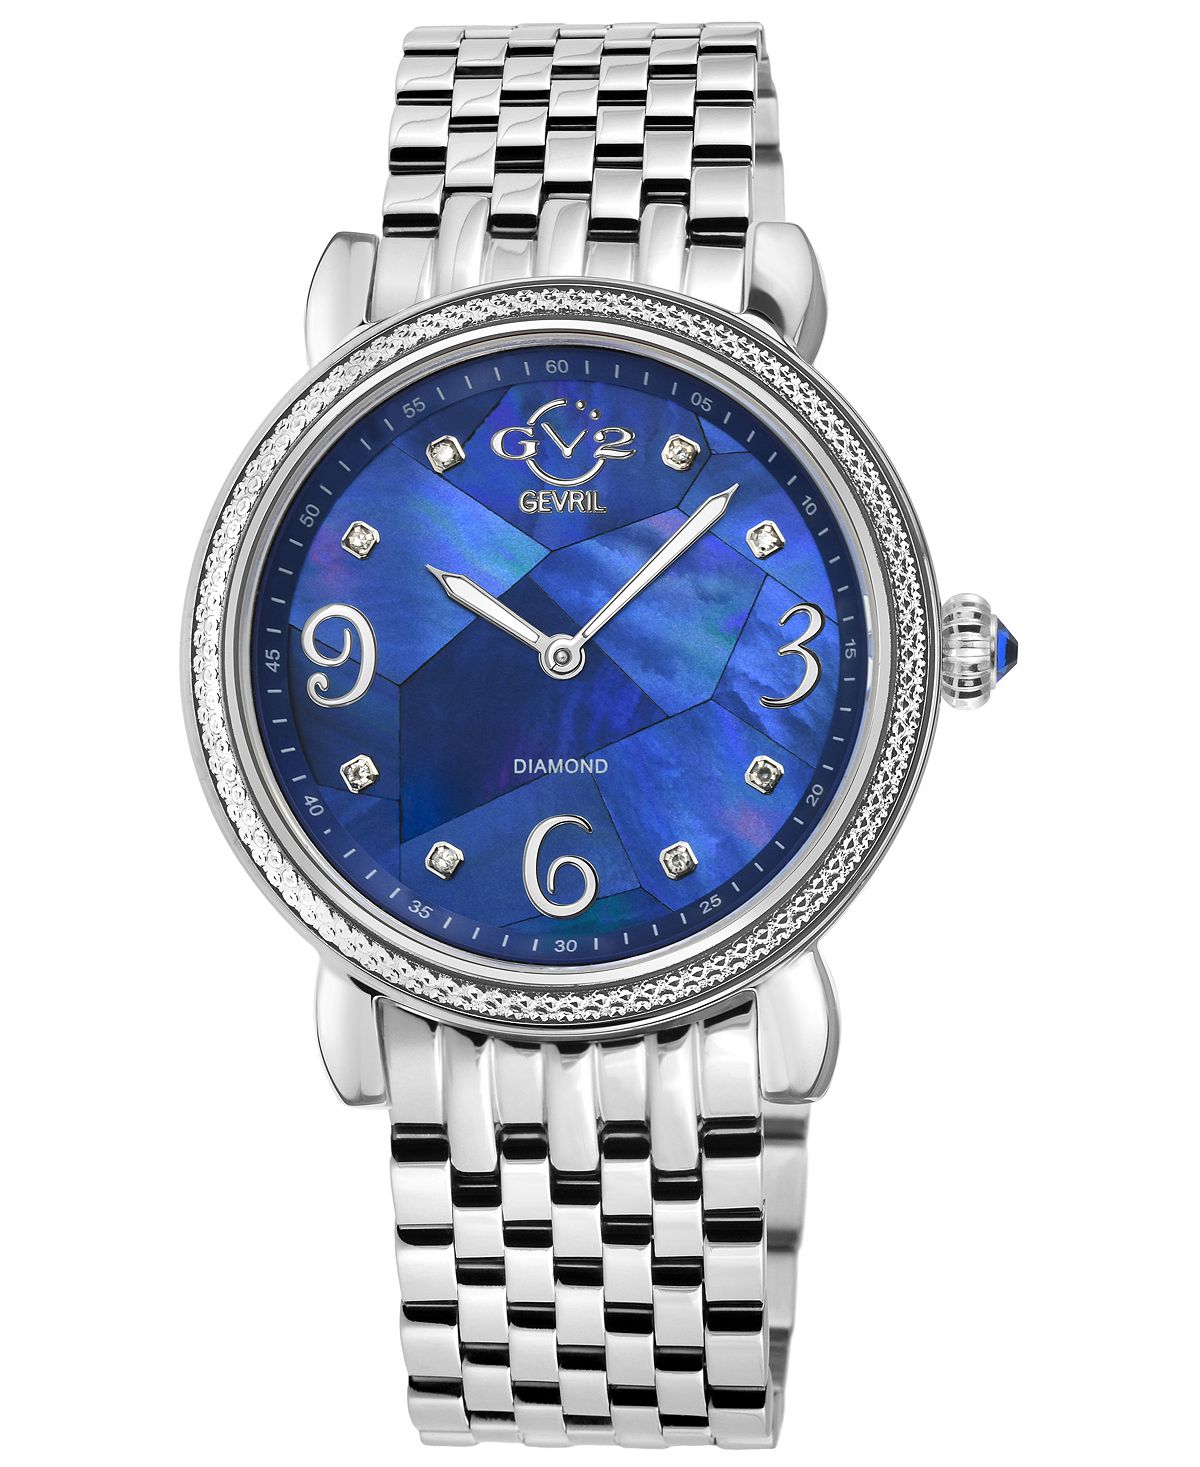 Женские часы Ravenna швейцарские кварцевые серебристого цвета из нержавеющей стали 37 мм GV2 by Gevril, серебро